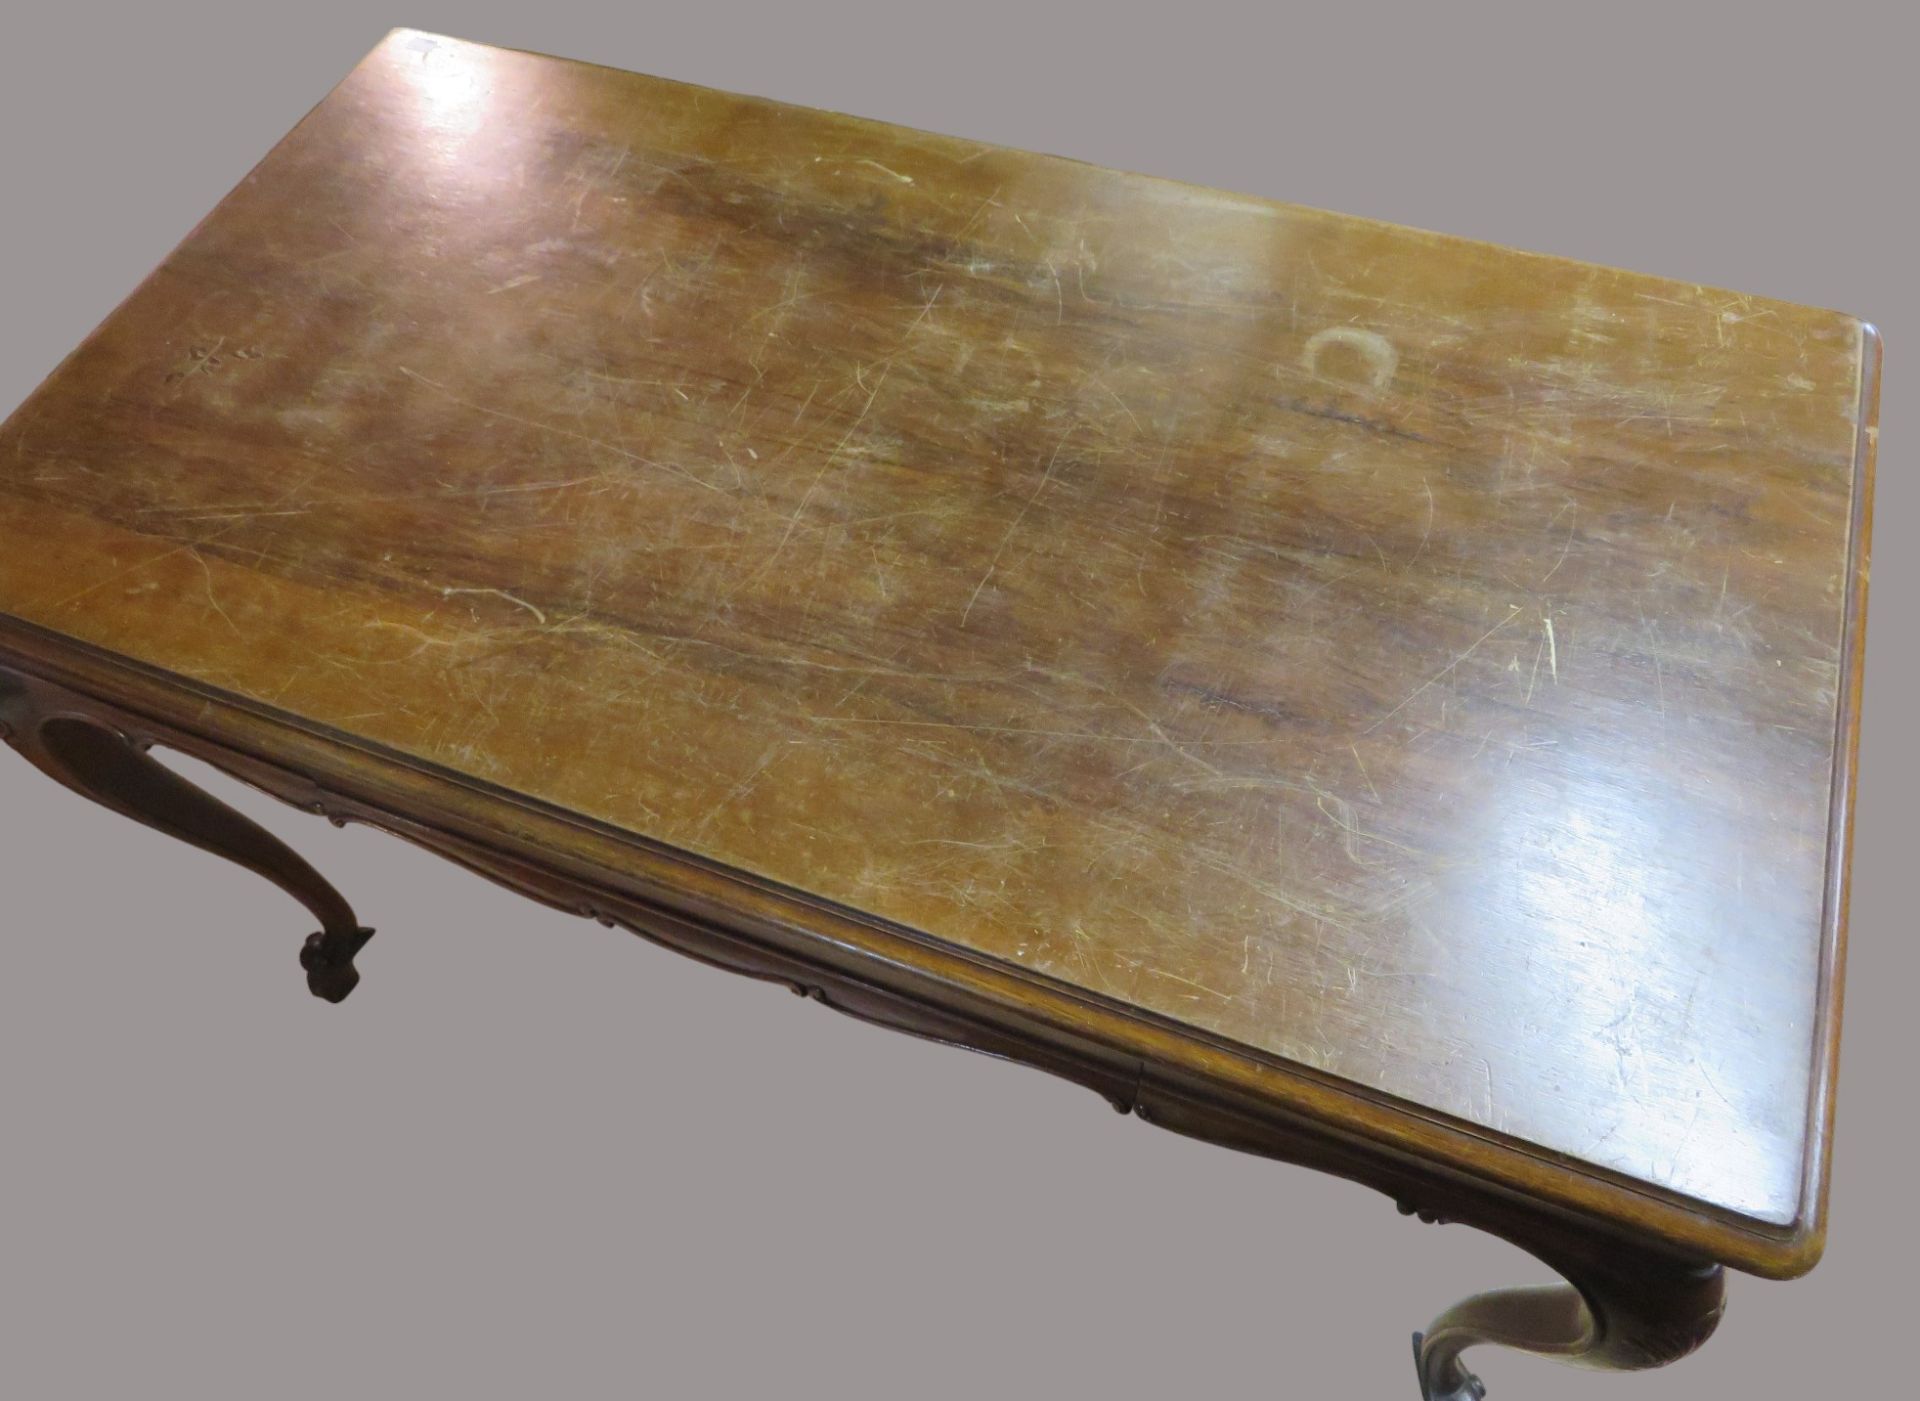 Schreibtisch, Barockstil, Nussbaum geschnitzt, 2-schübig, rest.bed., 76 x 119 x 68 cm. - Image 2 of 2